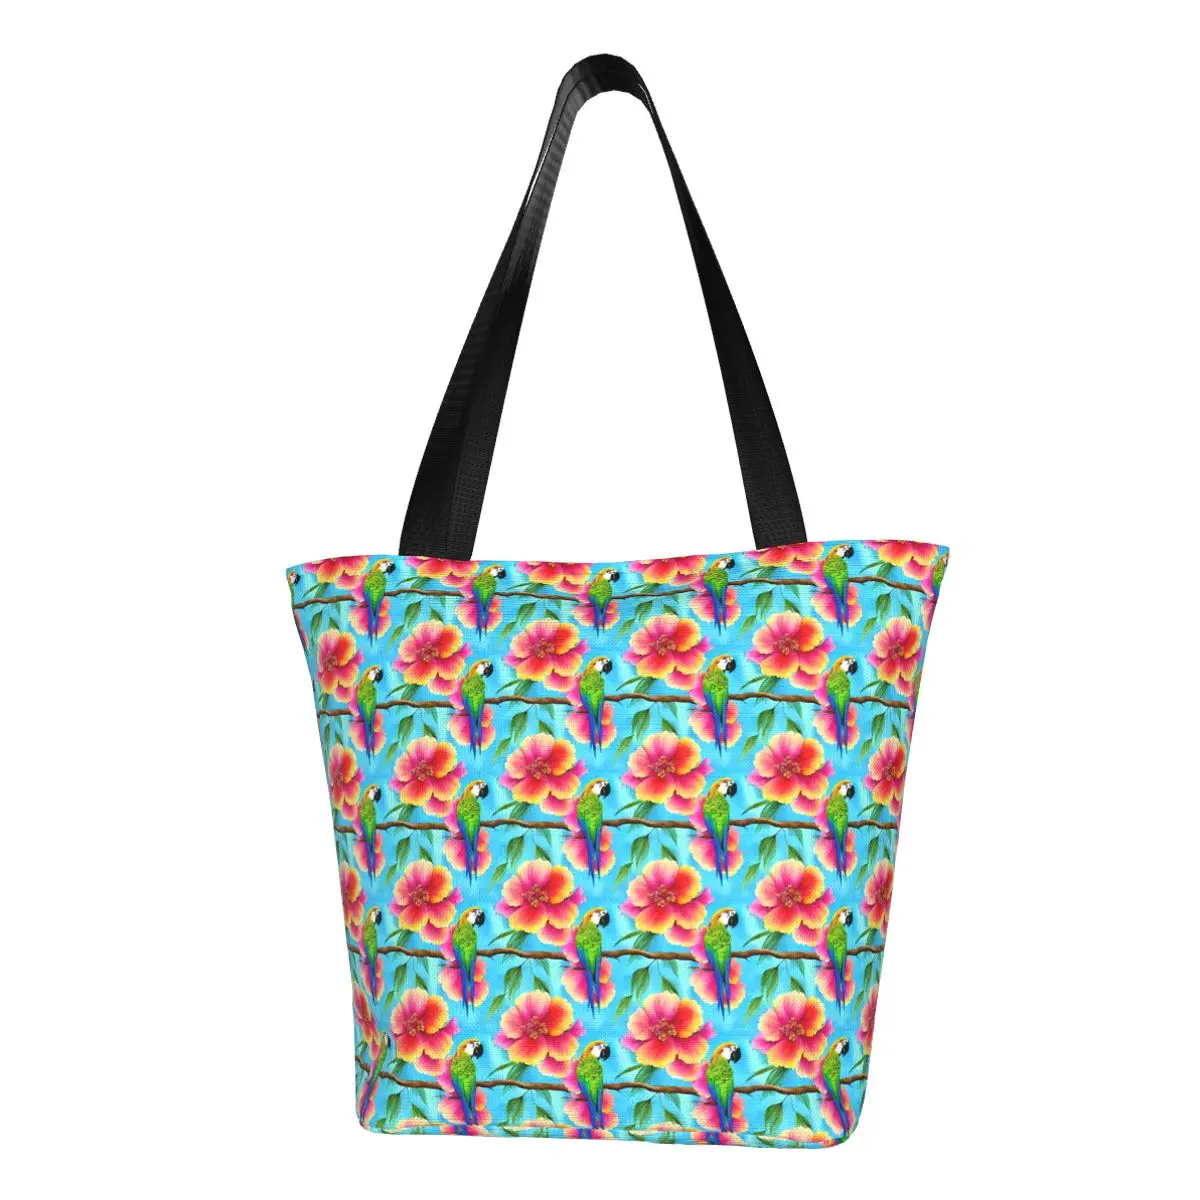 

Сумка для покупок с тропическим попугаем, шоппер с цветочным принтом, уличная тканевая Студенческая сумочка-тоут, с графическим дизайном в эстетике